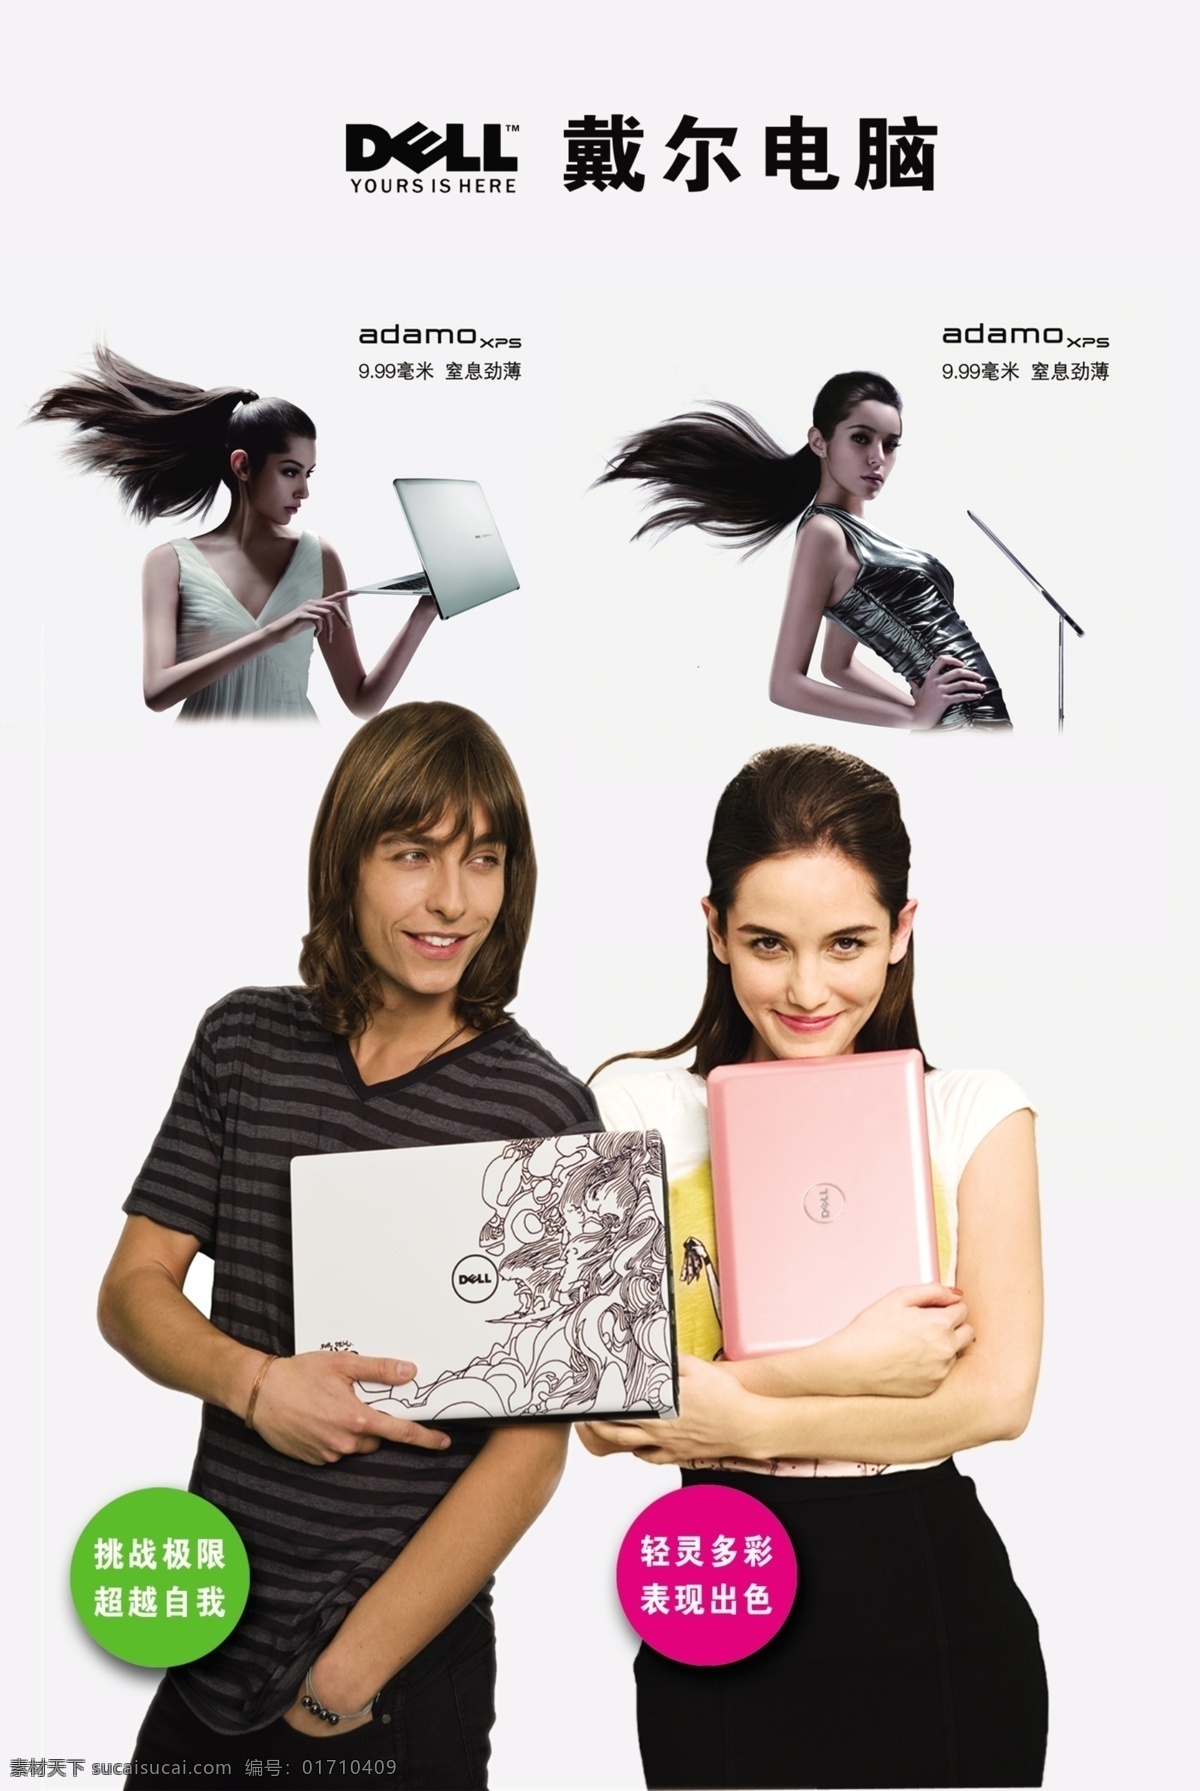 笔记本电脑 戴尔 电子 广告设计模板 美女 模特 数码 源文件 戴尔笔记本 笔记本 电脑 其他海报设计